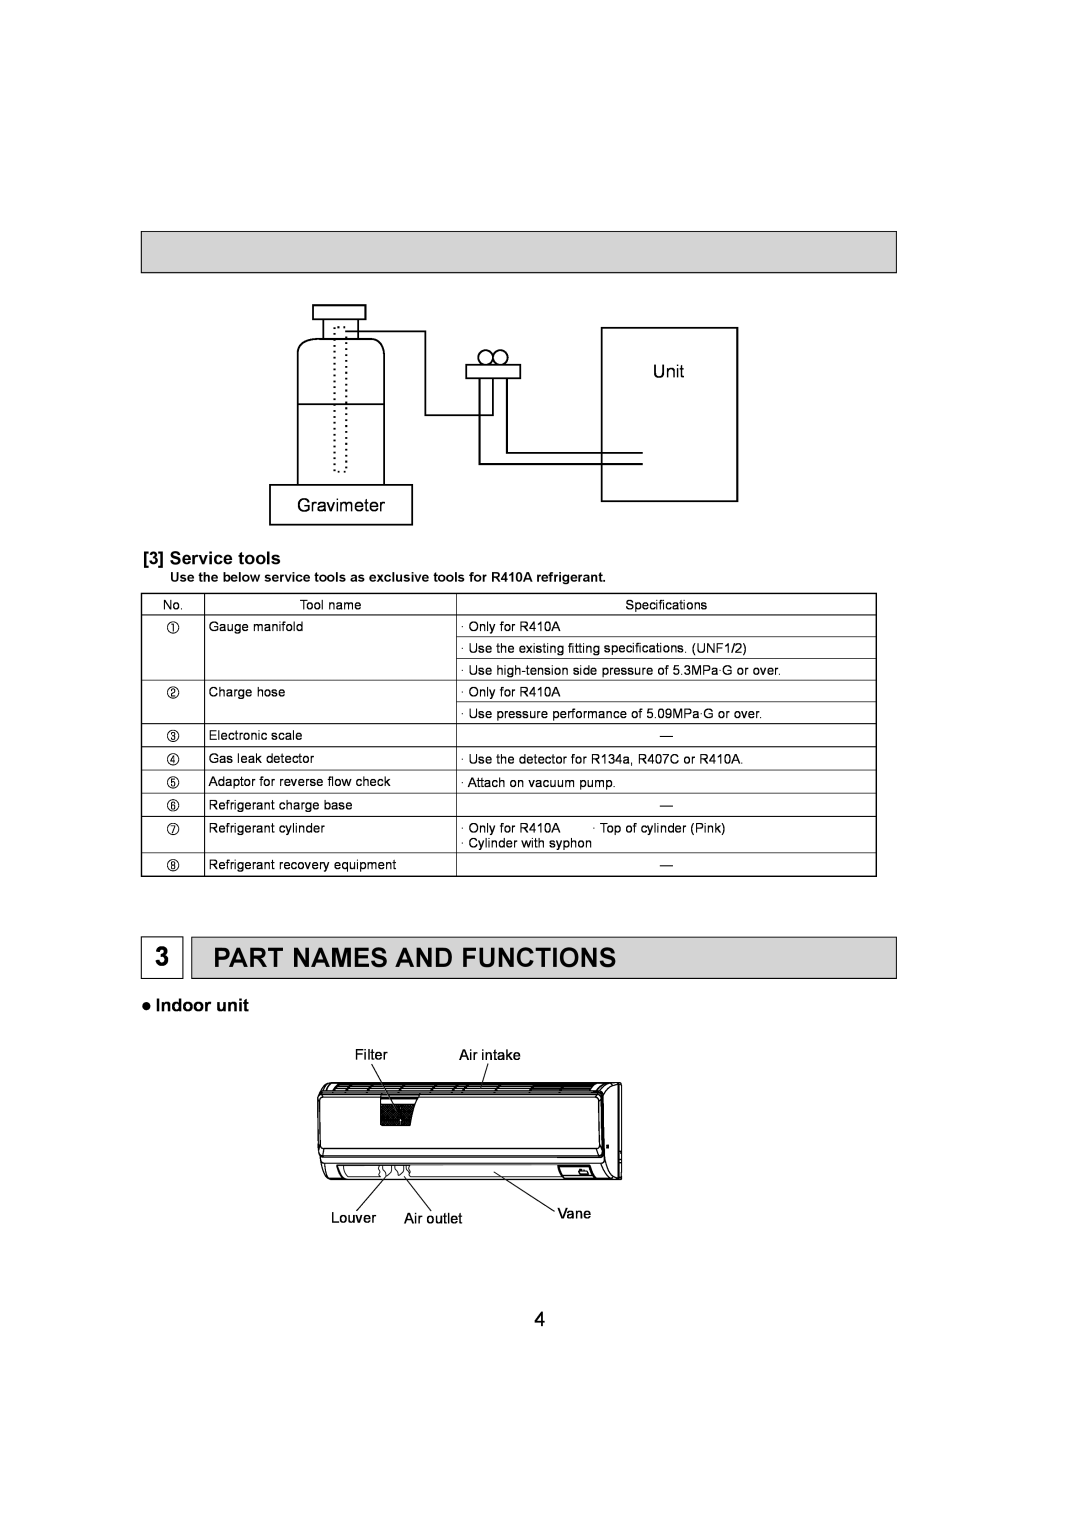 Mitsumi electronic PKA-A12HA4, PKA-A18HA4 Part Names And Functions, Unit Gravimeter, Service tools, Indoor unit 